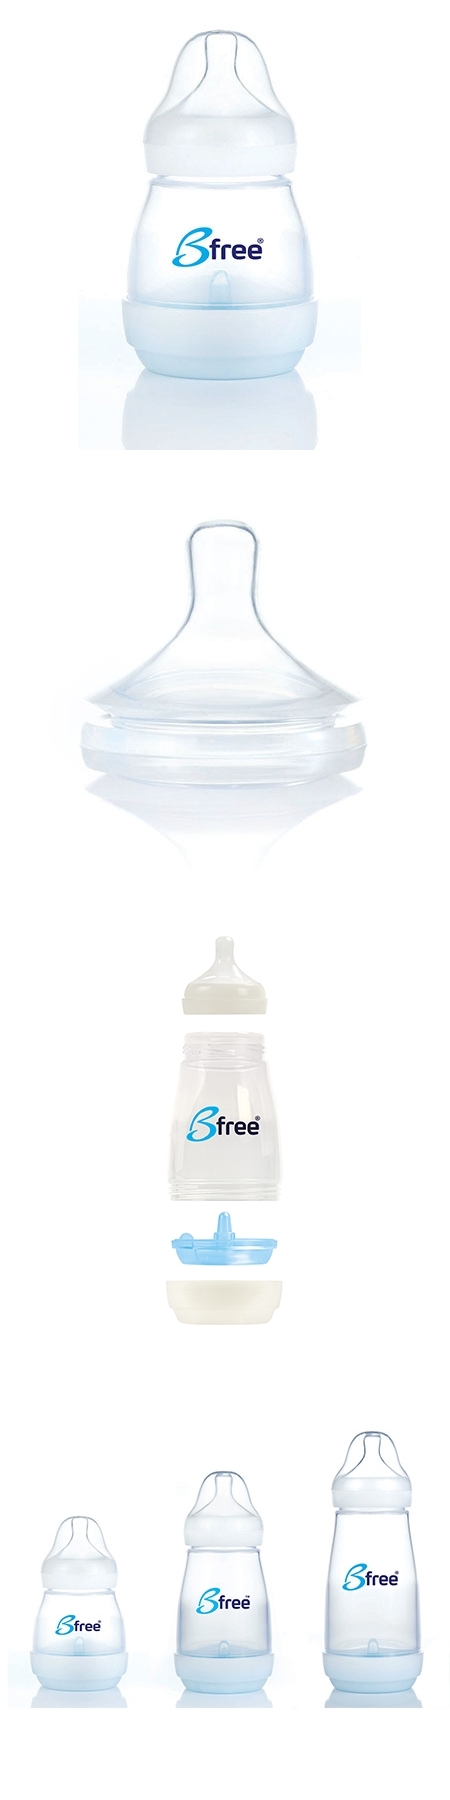 貝麗Bfree-PP-EU防脹氣奶瓶寬口徑160ml